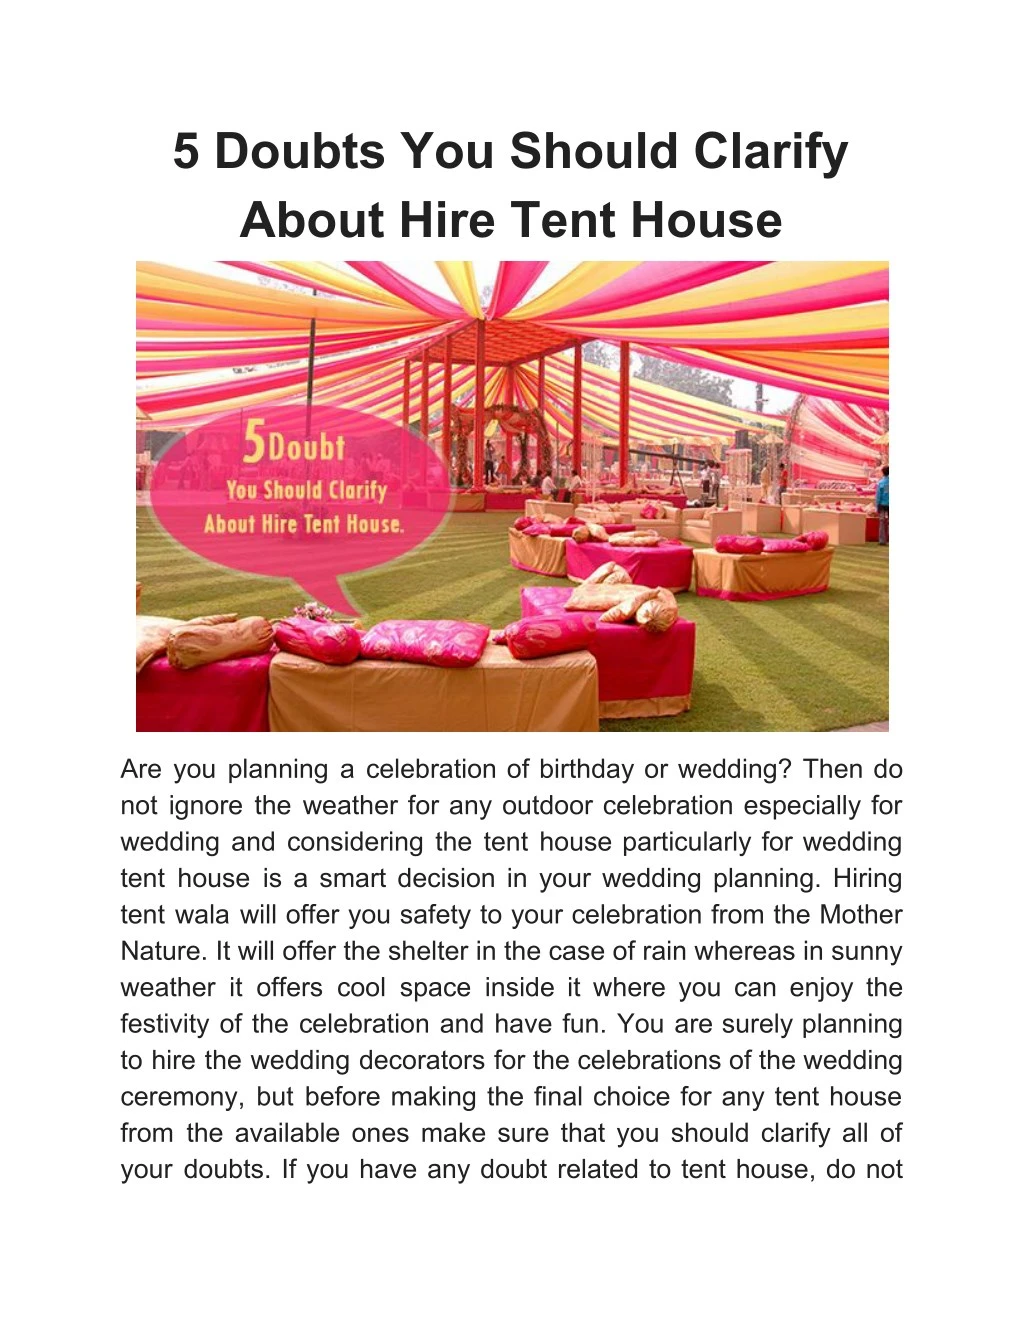 5 doubts you should clarify about hire tent house